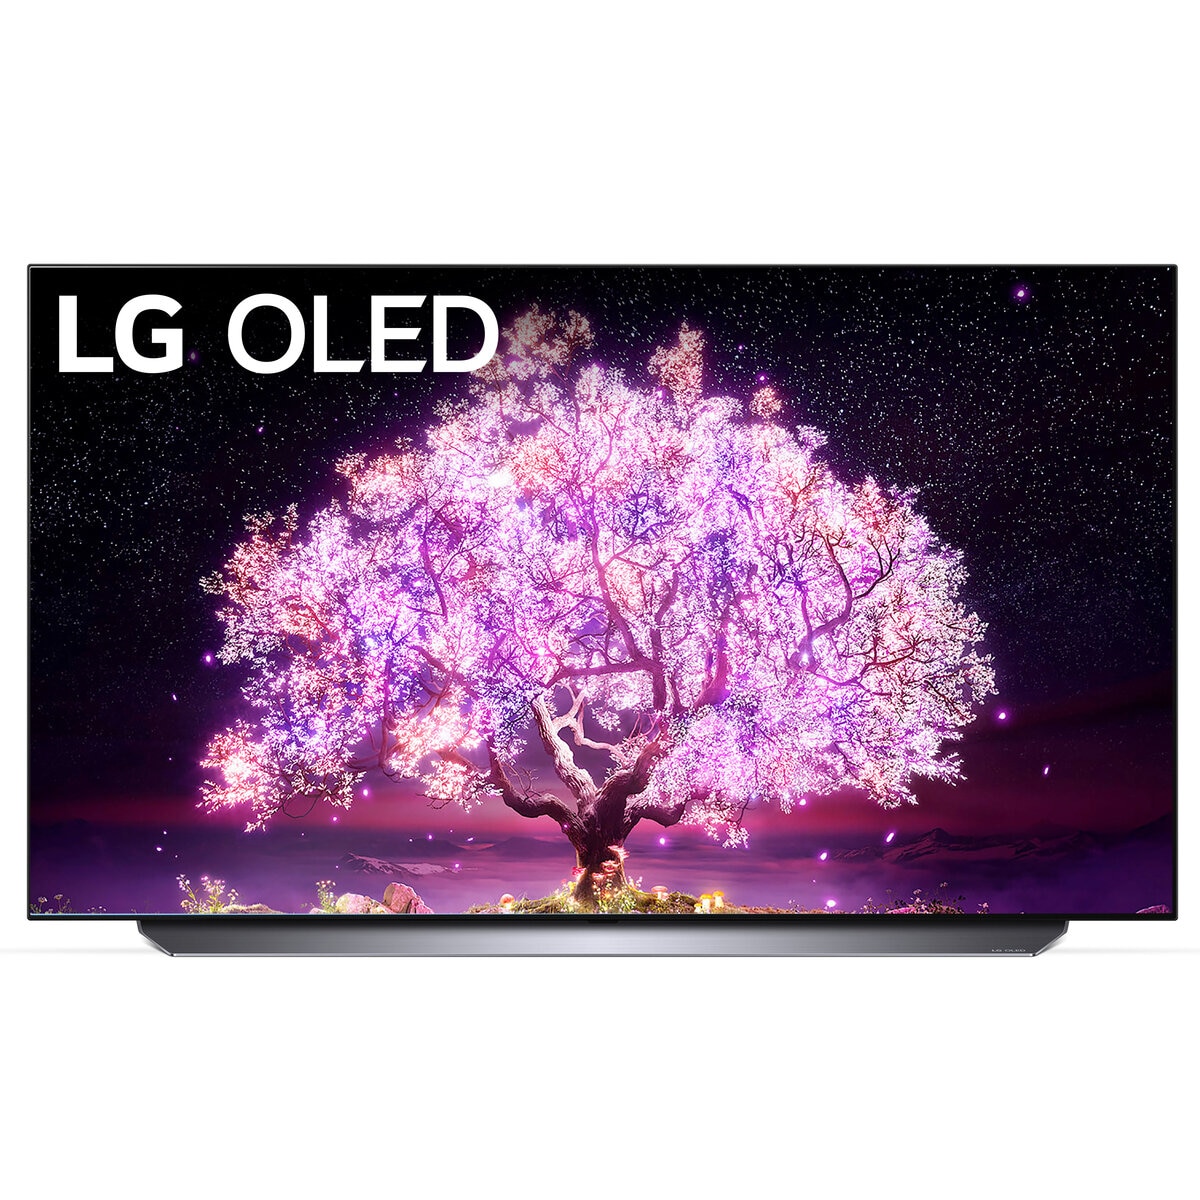 LG 型 4K 有機EL テレビ OLEDC1PJB   Costco Japan